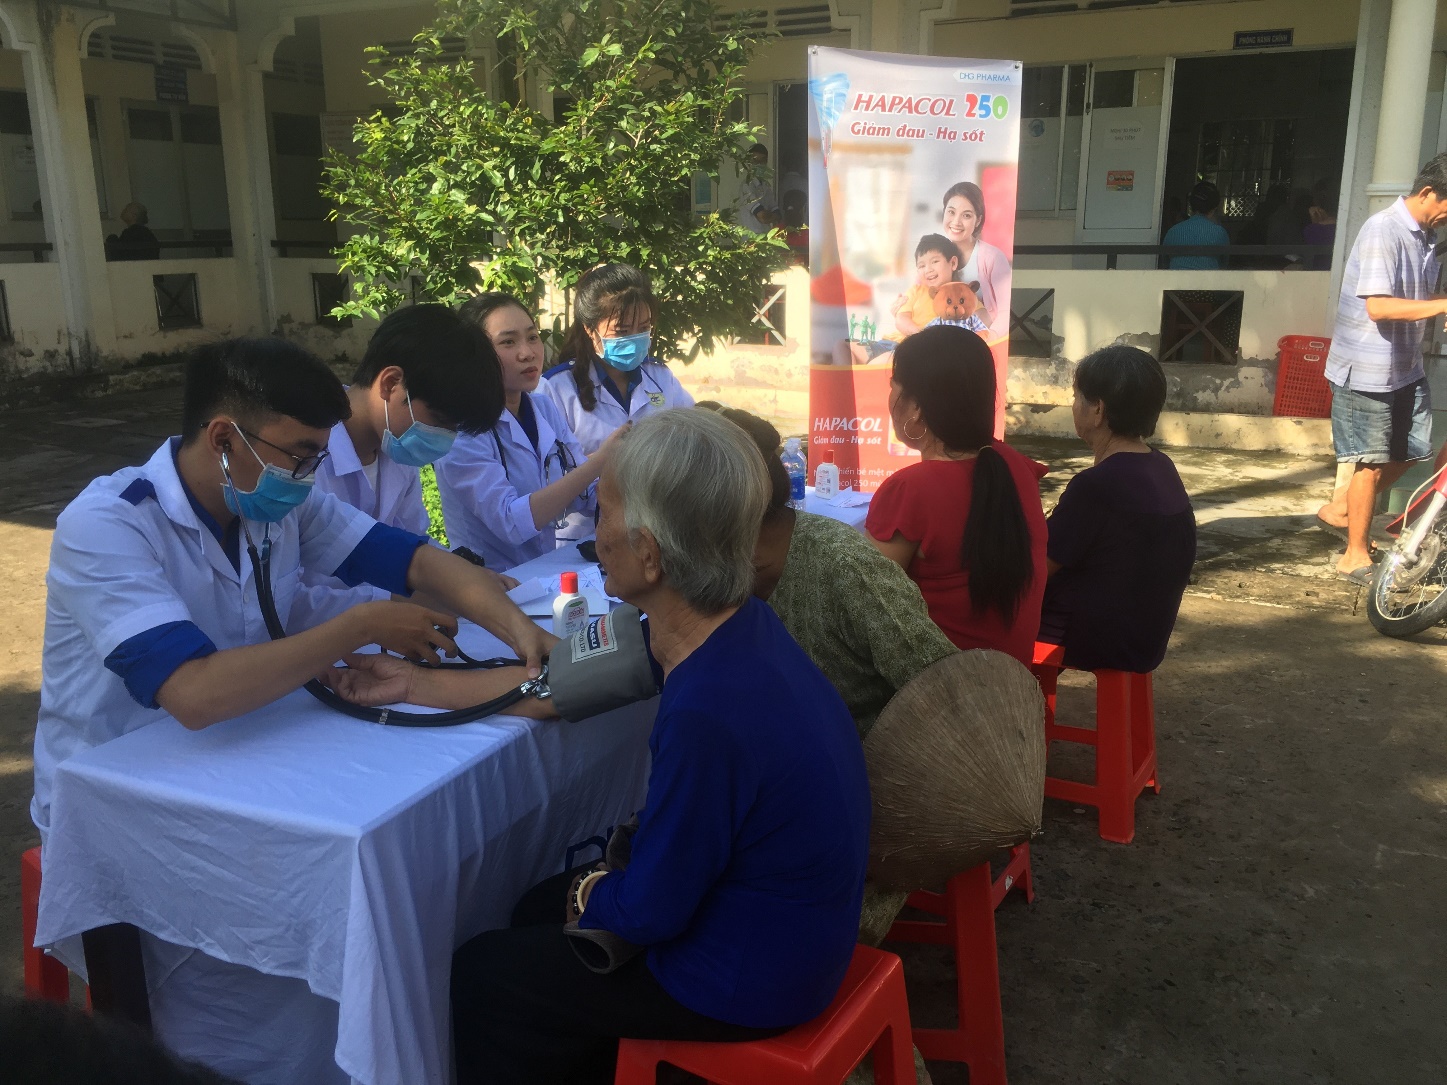  Dược Hậu Giang đồng hành cùng đội bác sĩ tình nguyện thực hiện các chương trình khám bệnh phát thuốc miễn phí cho người dân cả nước